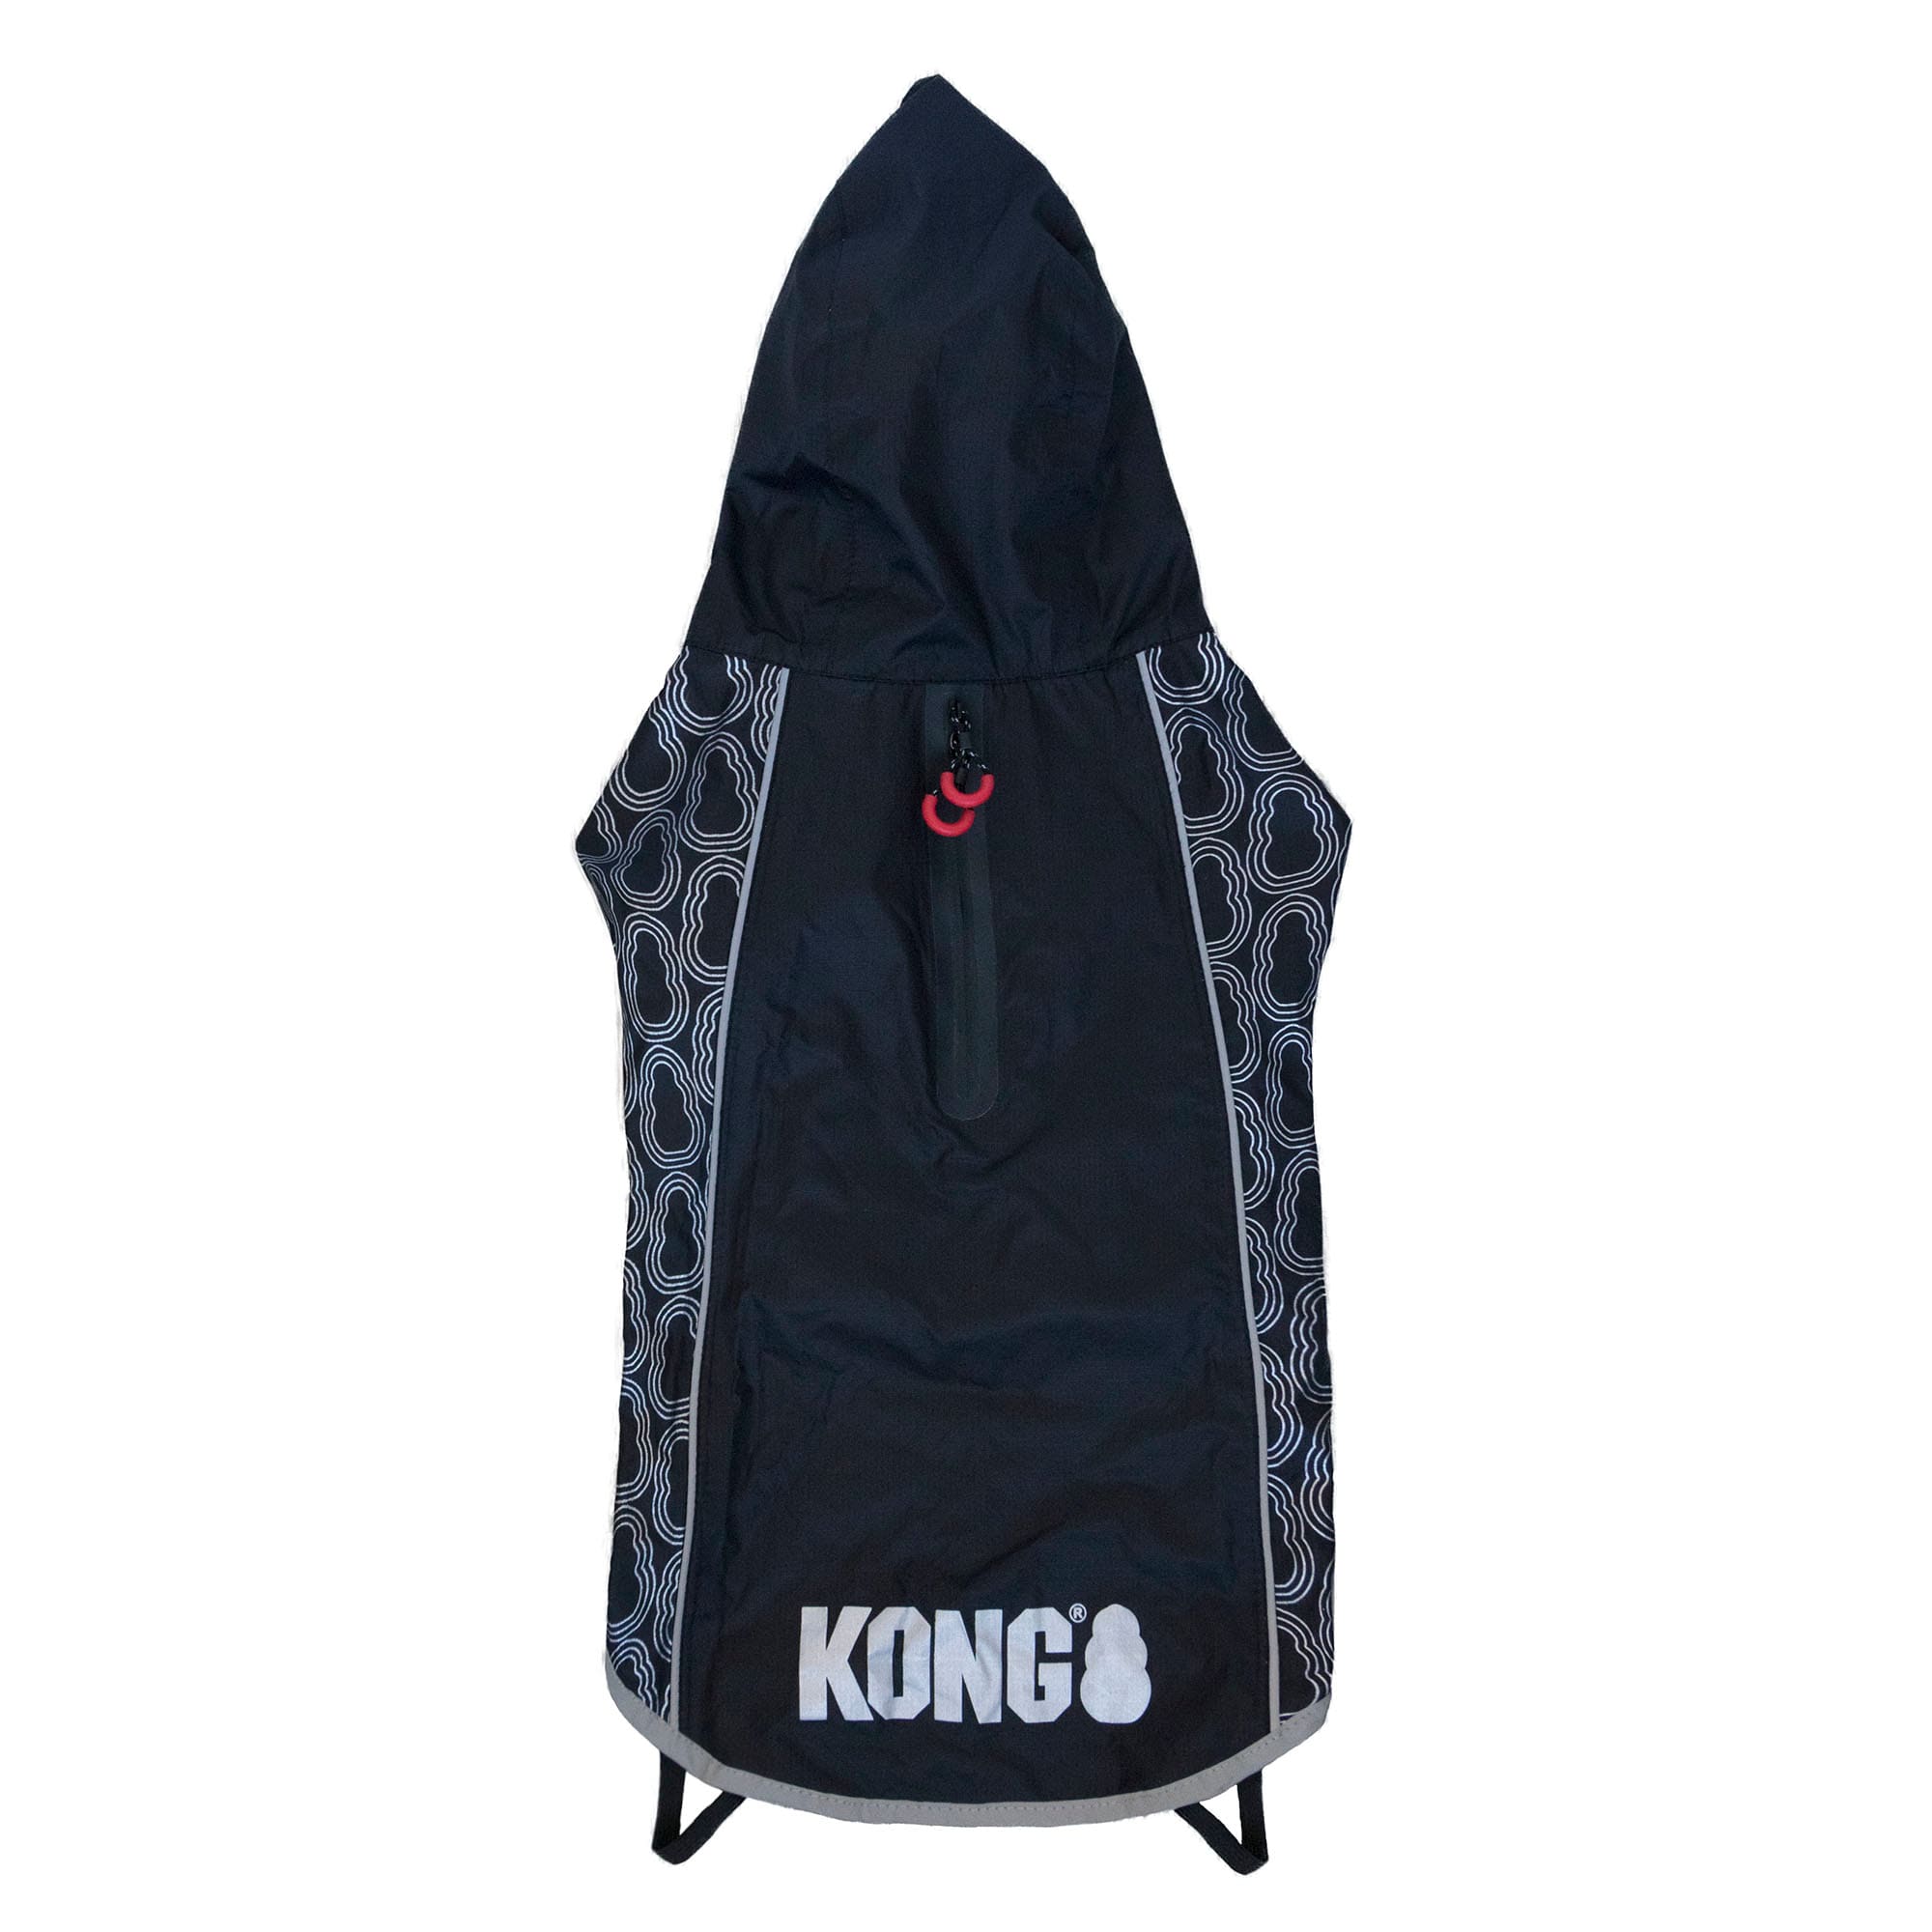 KONG Black Elements Dog Rain Jacket, Large